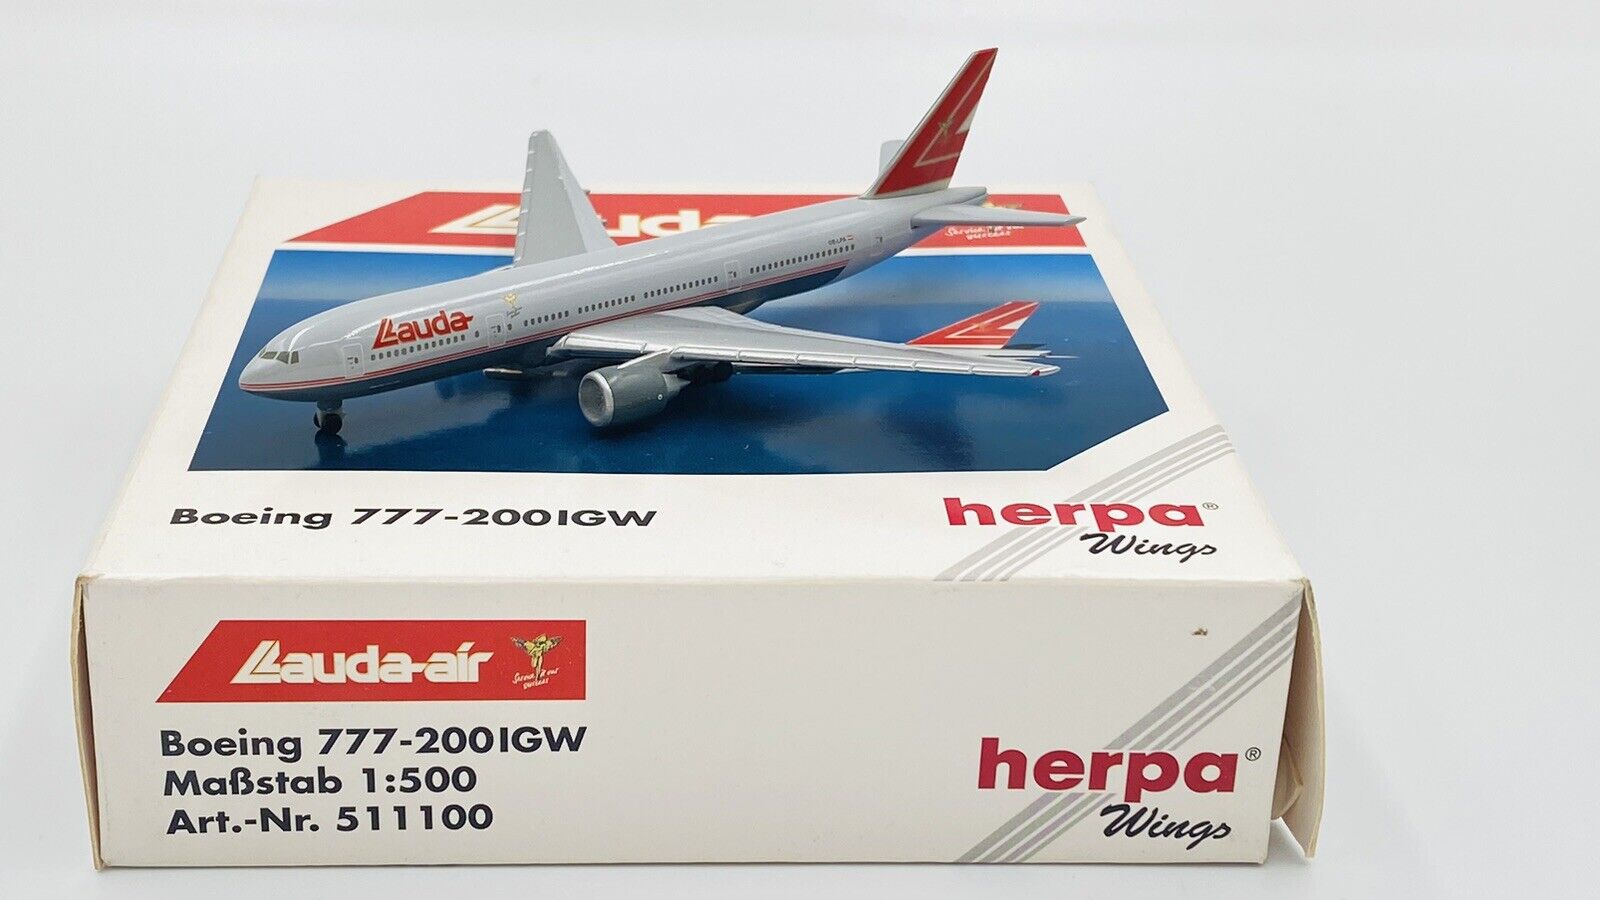 HERPA WINGS (511100) 1:500 LLAUDA-AIR BOEING 777-200IGW BOXED 